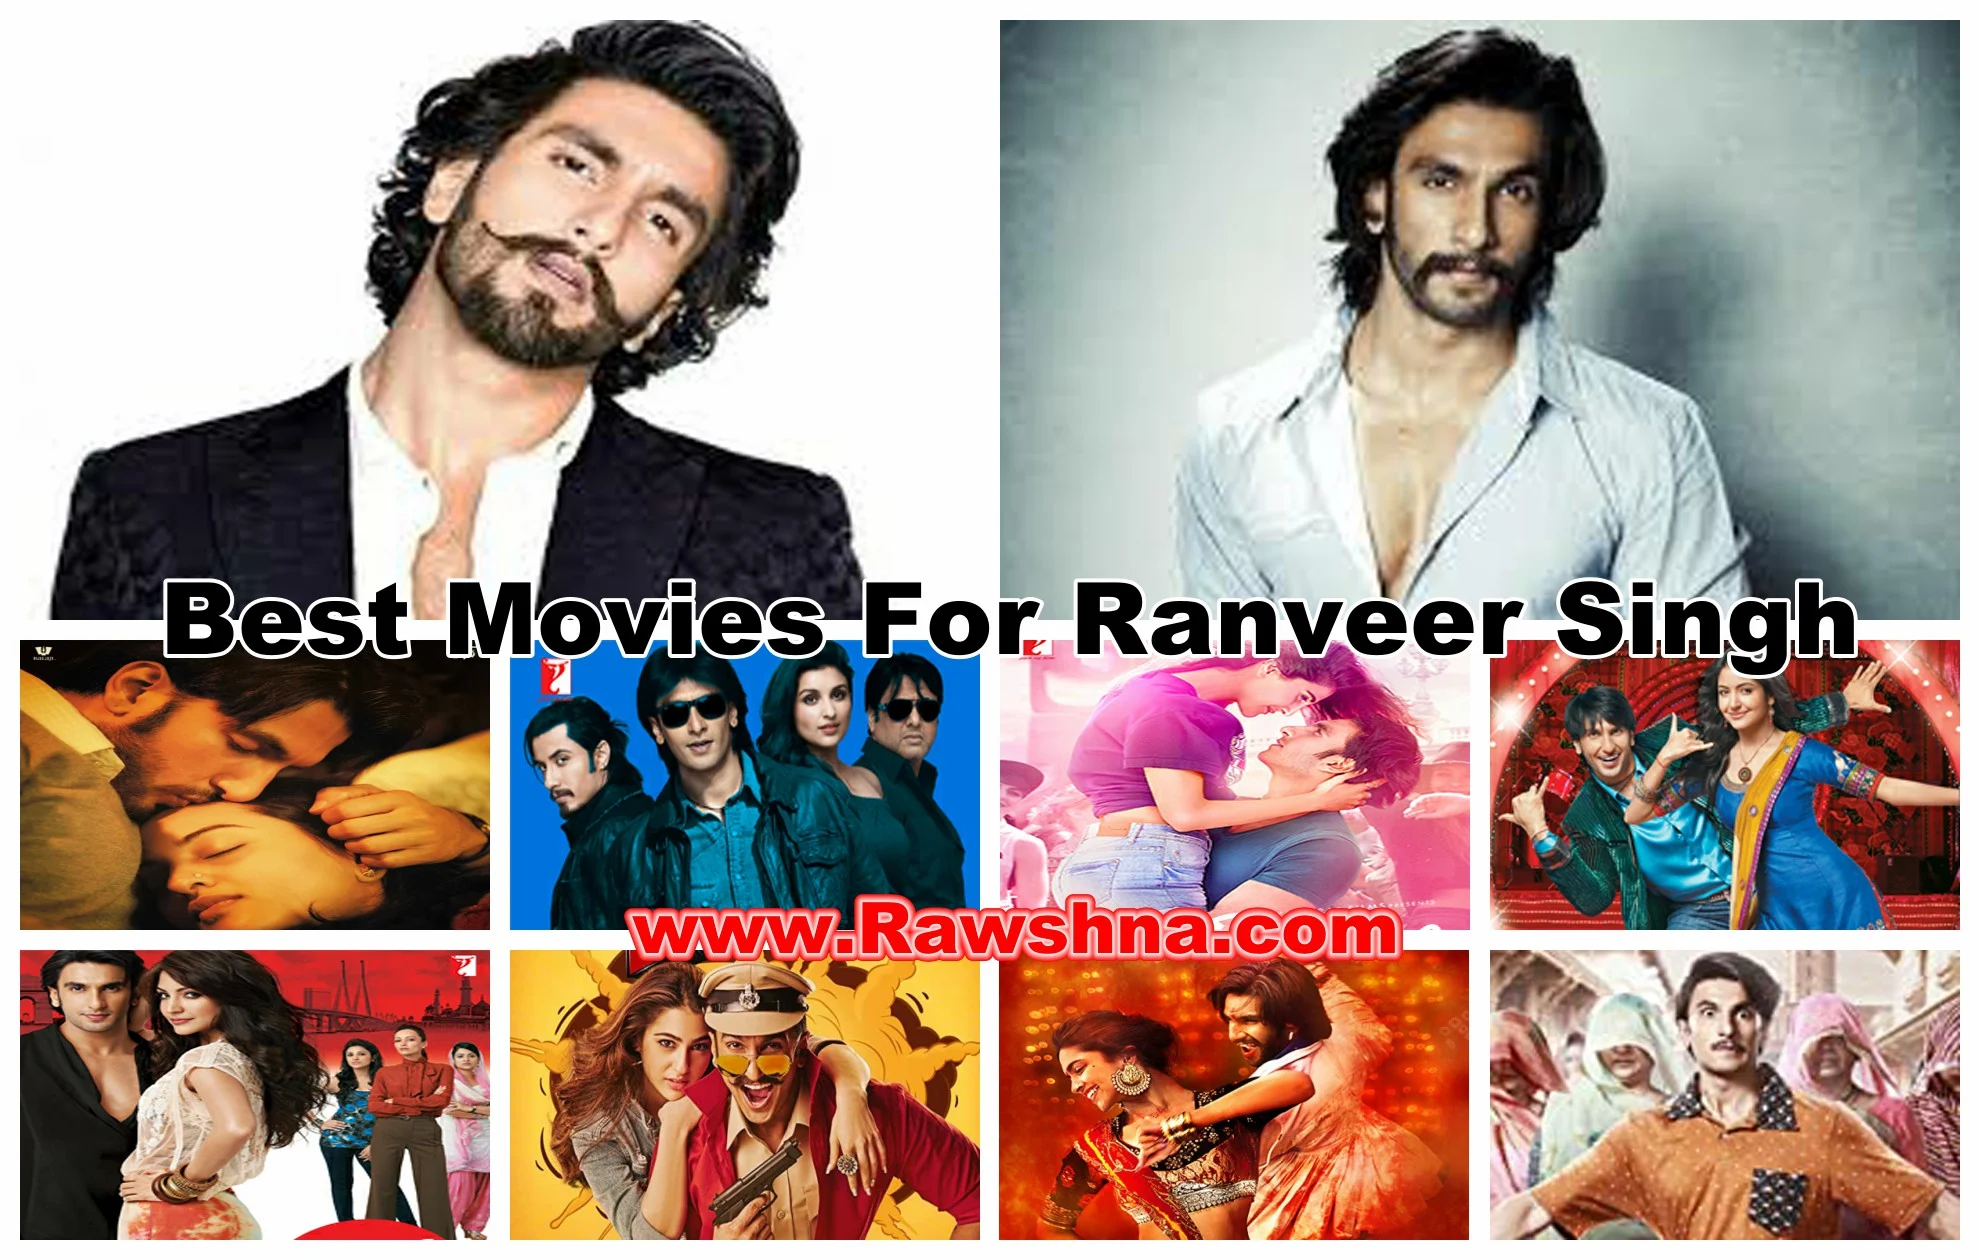 شاهد افضل افلام رانفير سينغ على الاطلاق شاهد قائمة أفضل 10 افلام رانفير سينغ على الإطلاق معلومات عن رانفير سينغ | Ranveer Singh